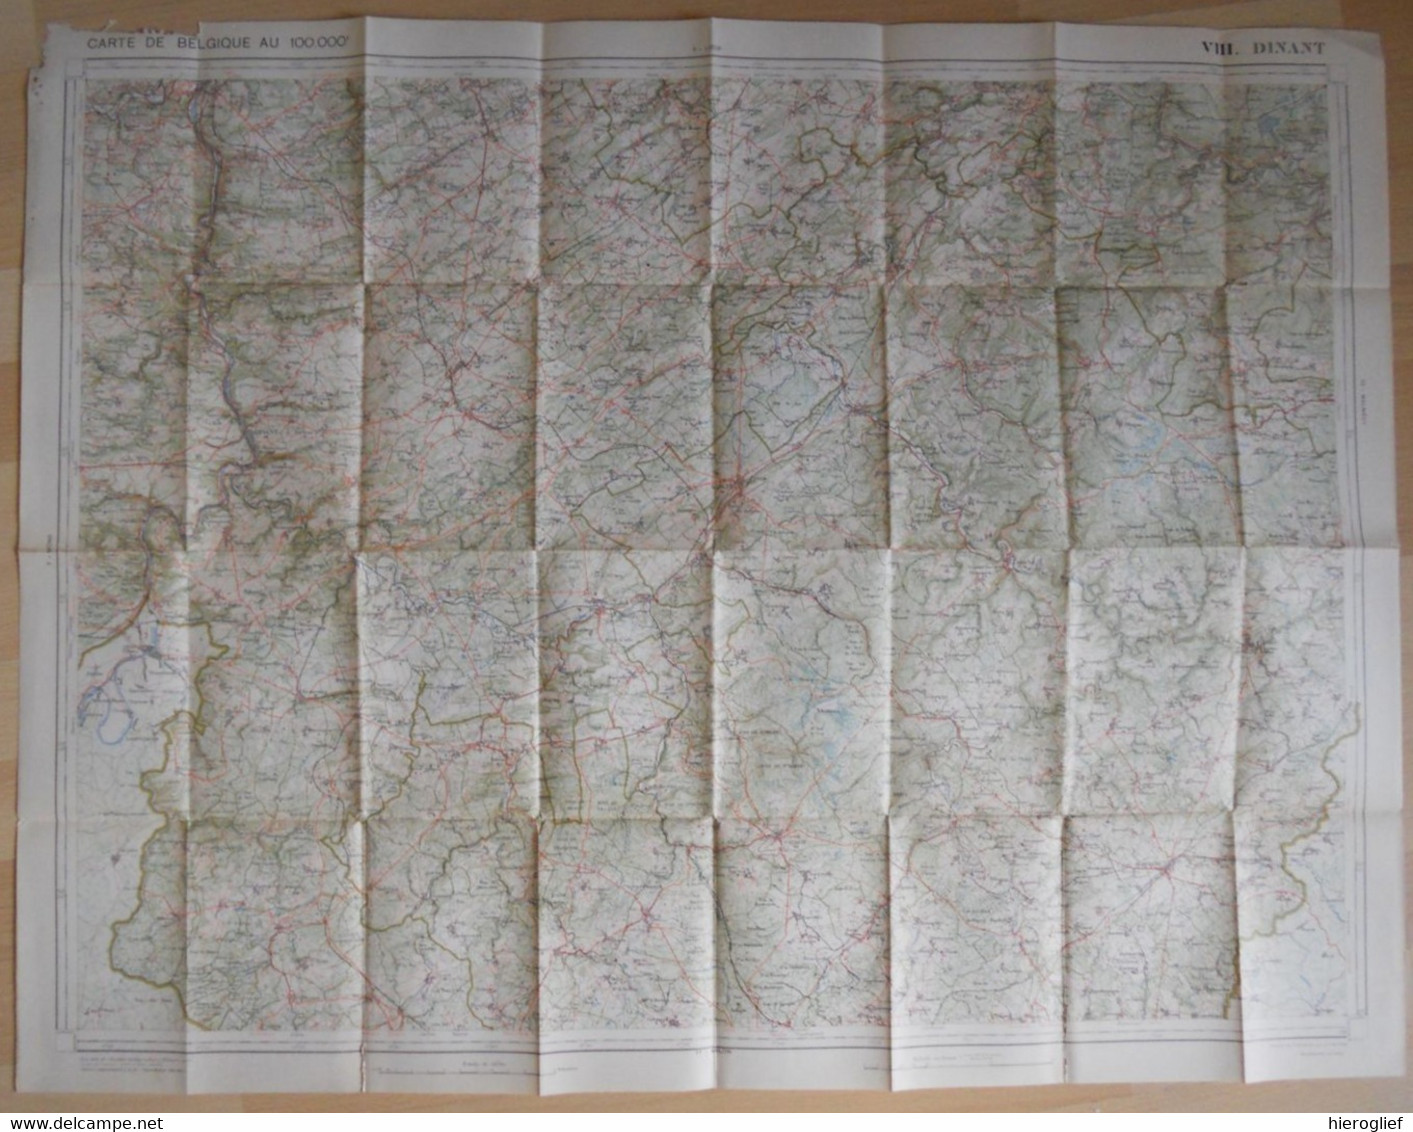 Carte De BELGIQUE Nr 8 DINANT Institut Cartographique Militaire Impression Litho 1933 Bastogne Houfalize La Roche Nadrin - Cartes Topographiques